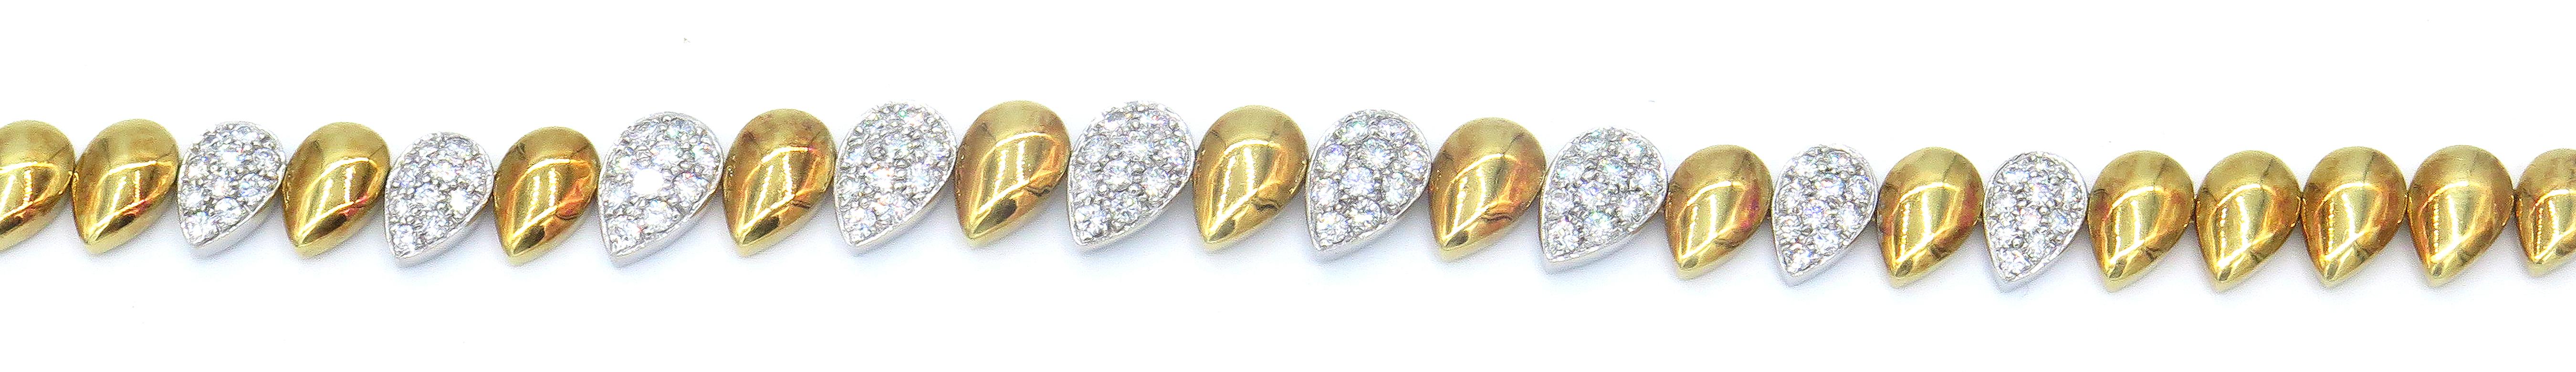 D'éblouissantes gouttes d'or 18k et de diamants sont placées côte à côte pour former le design de ce ravissant collier qui s'adapte parfaitement à tous les décolletés. Neuf gouttes d'or blanc 18 carats sont incrustées de 3,50 cts de diamants blancs